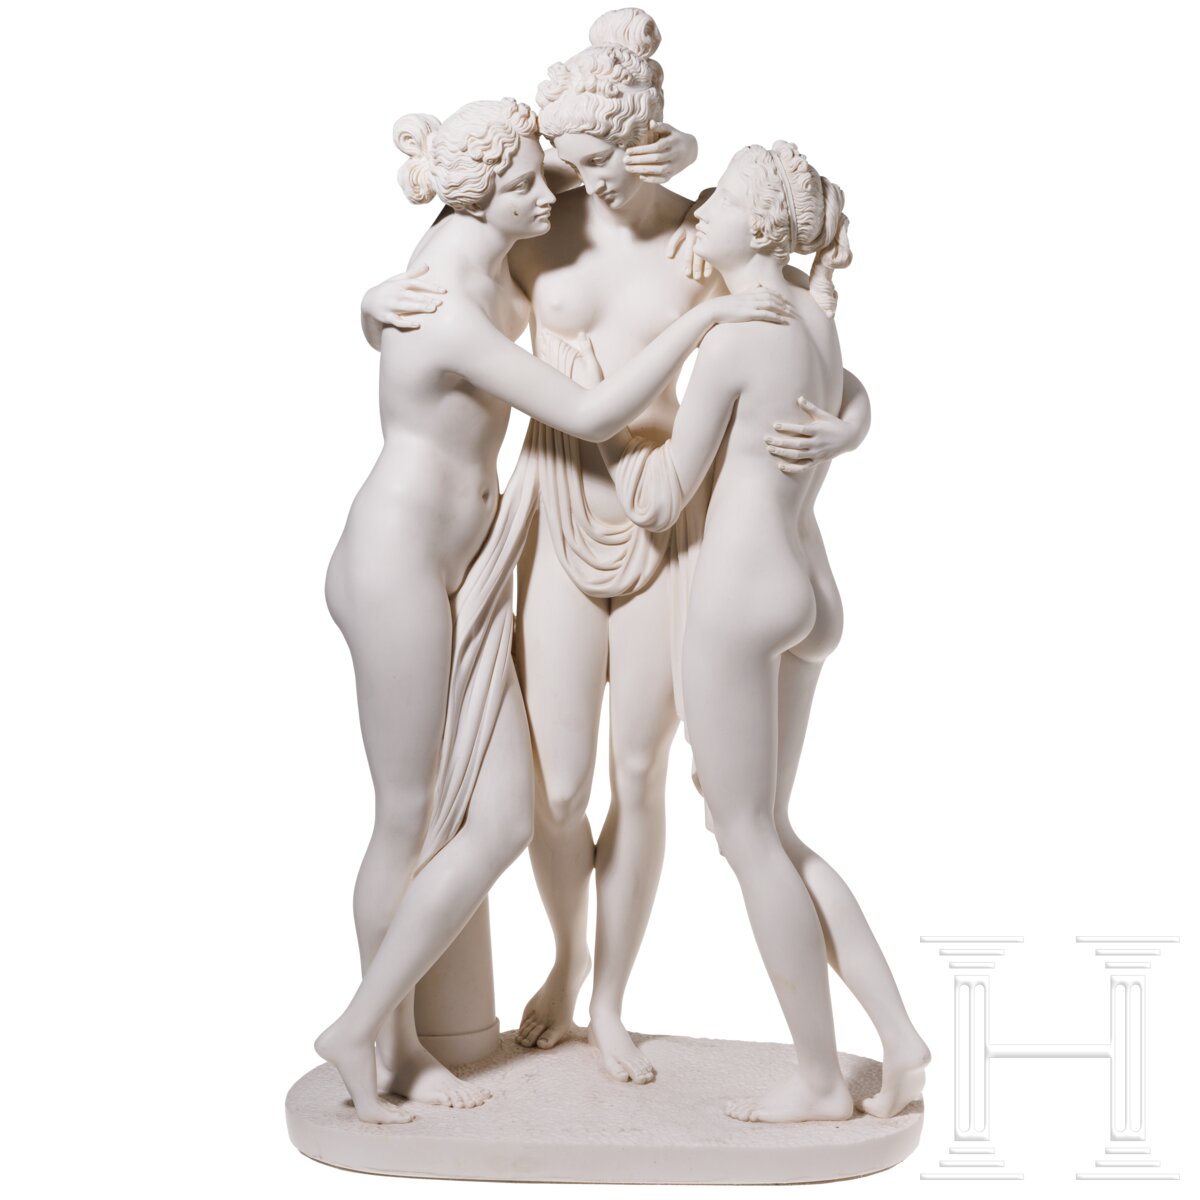 Skulptur "Drei Grazien" nach Antonio Canova, 20. Jhdt.